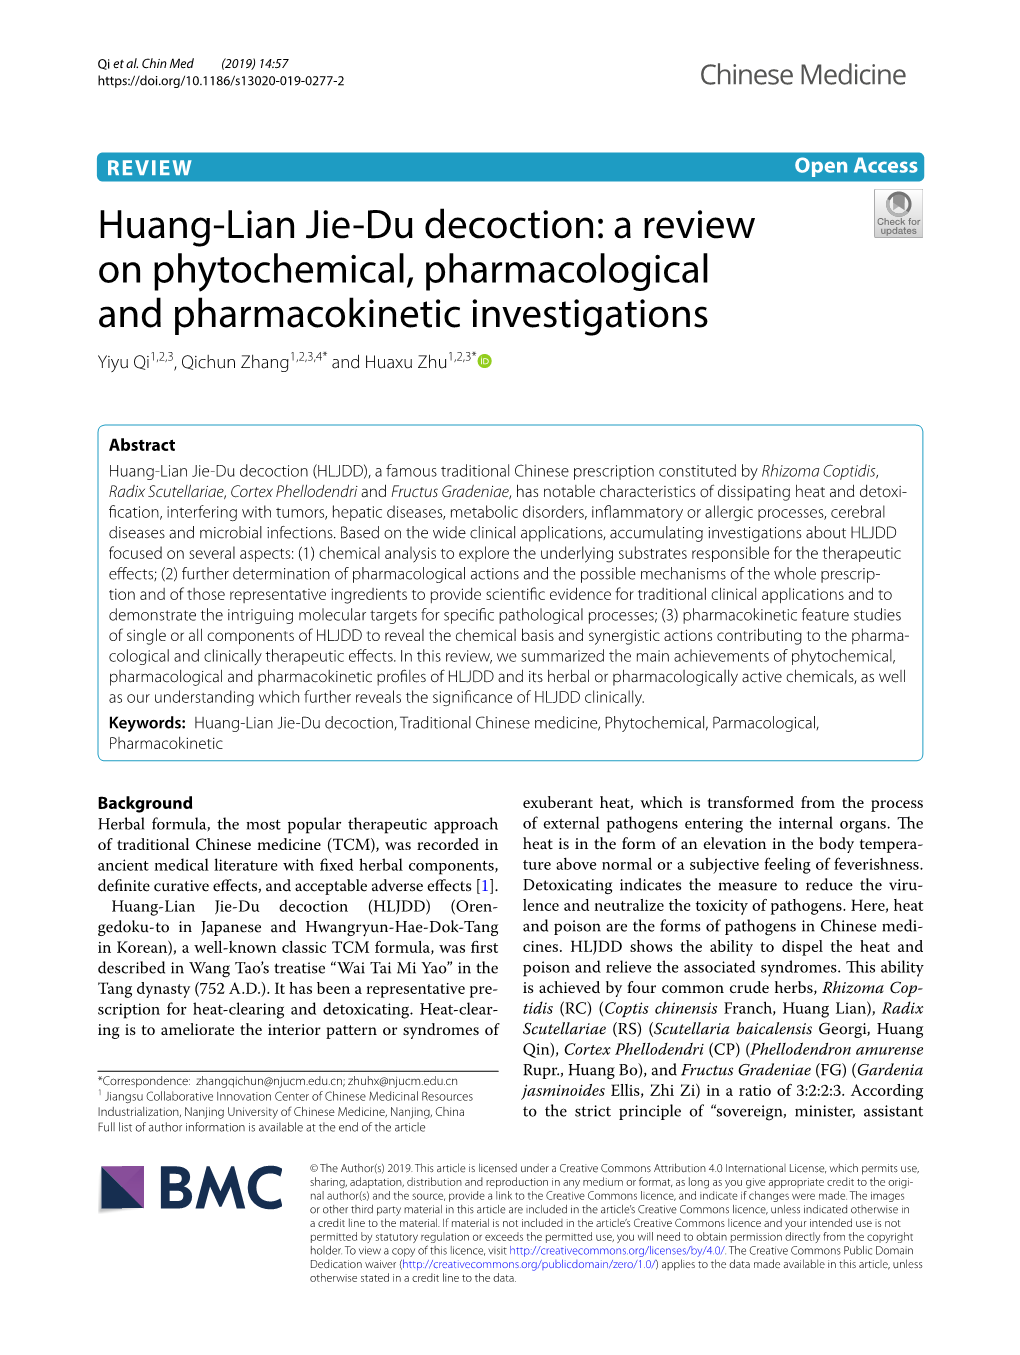 Huang-Lian Jie-Du Decoction